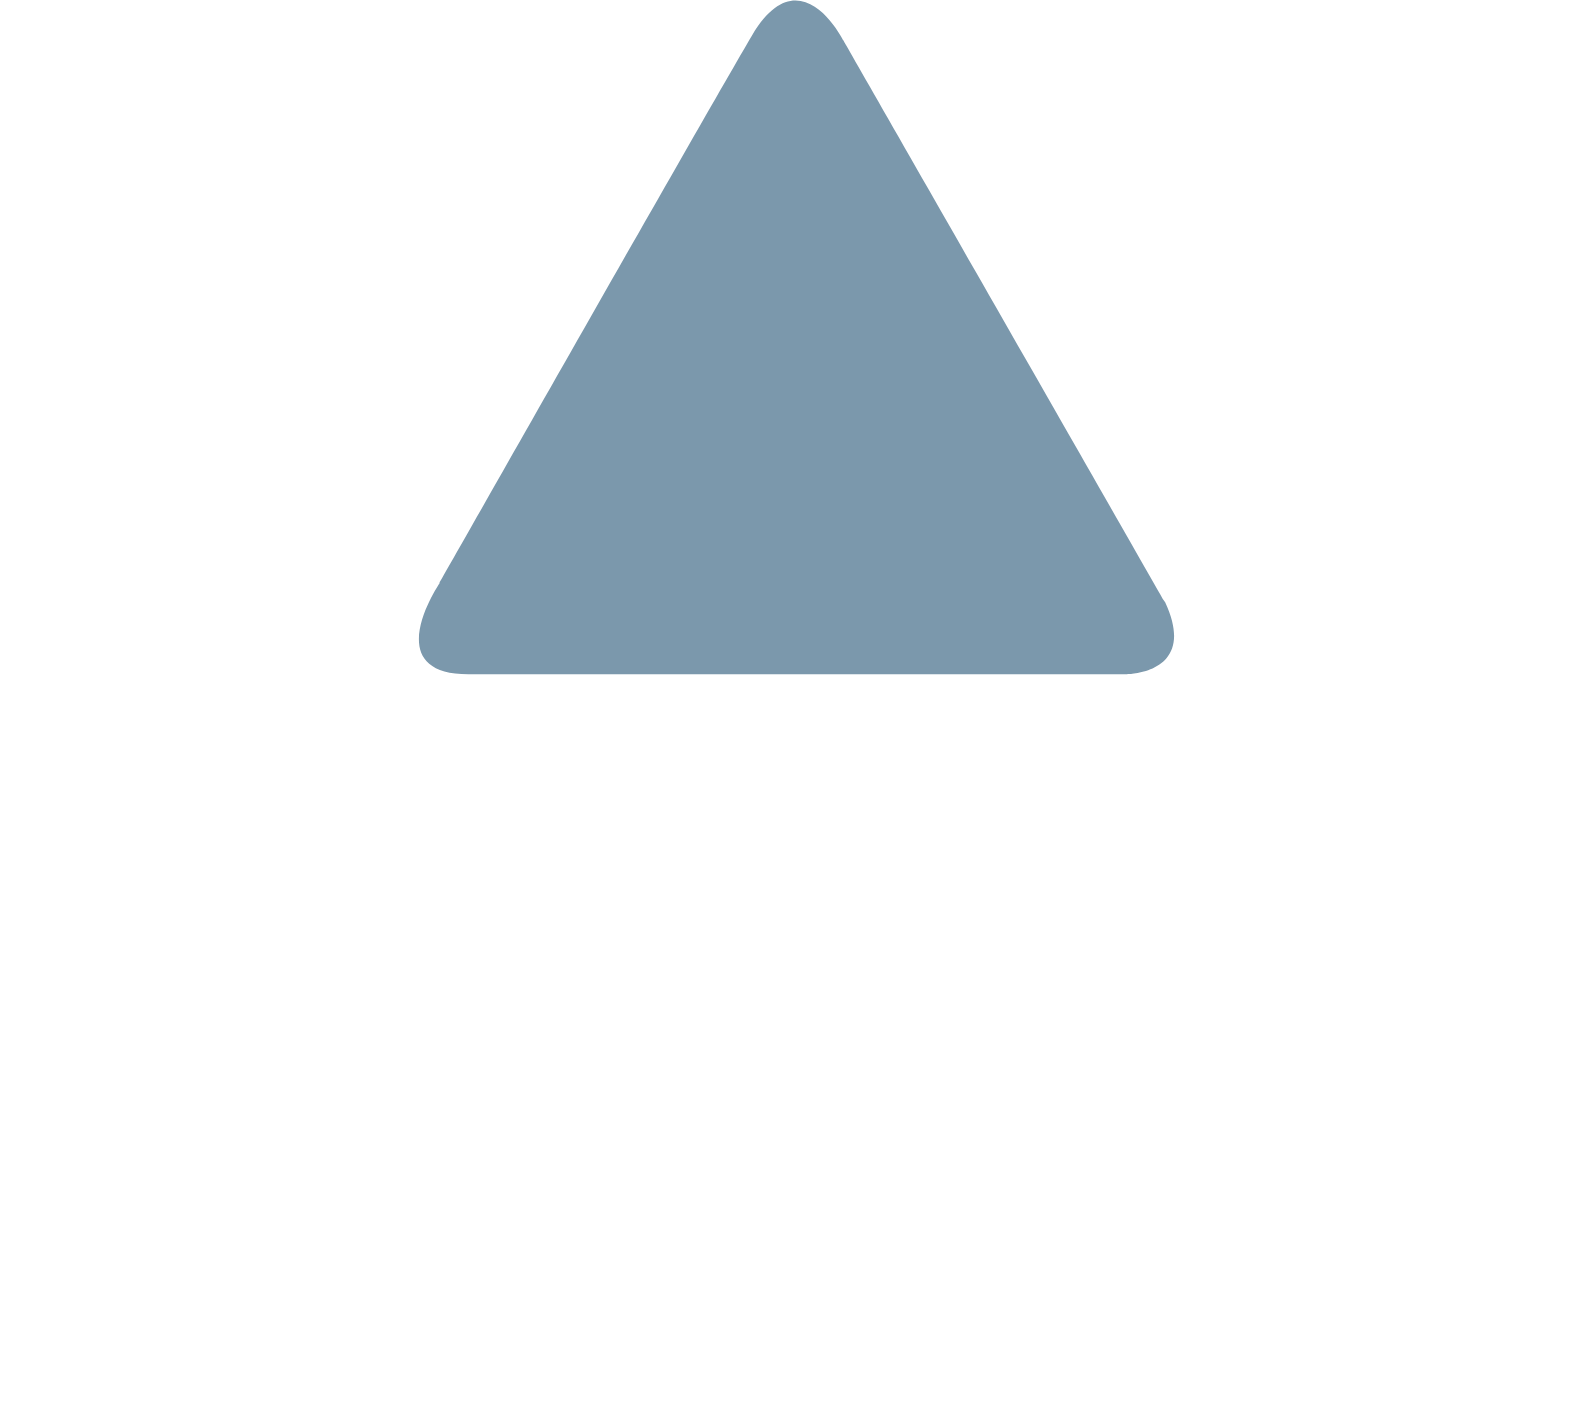 Tritax Big Box REIT logo pour fonds sombres (PNG transparent)